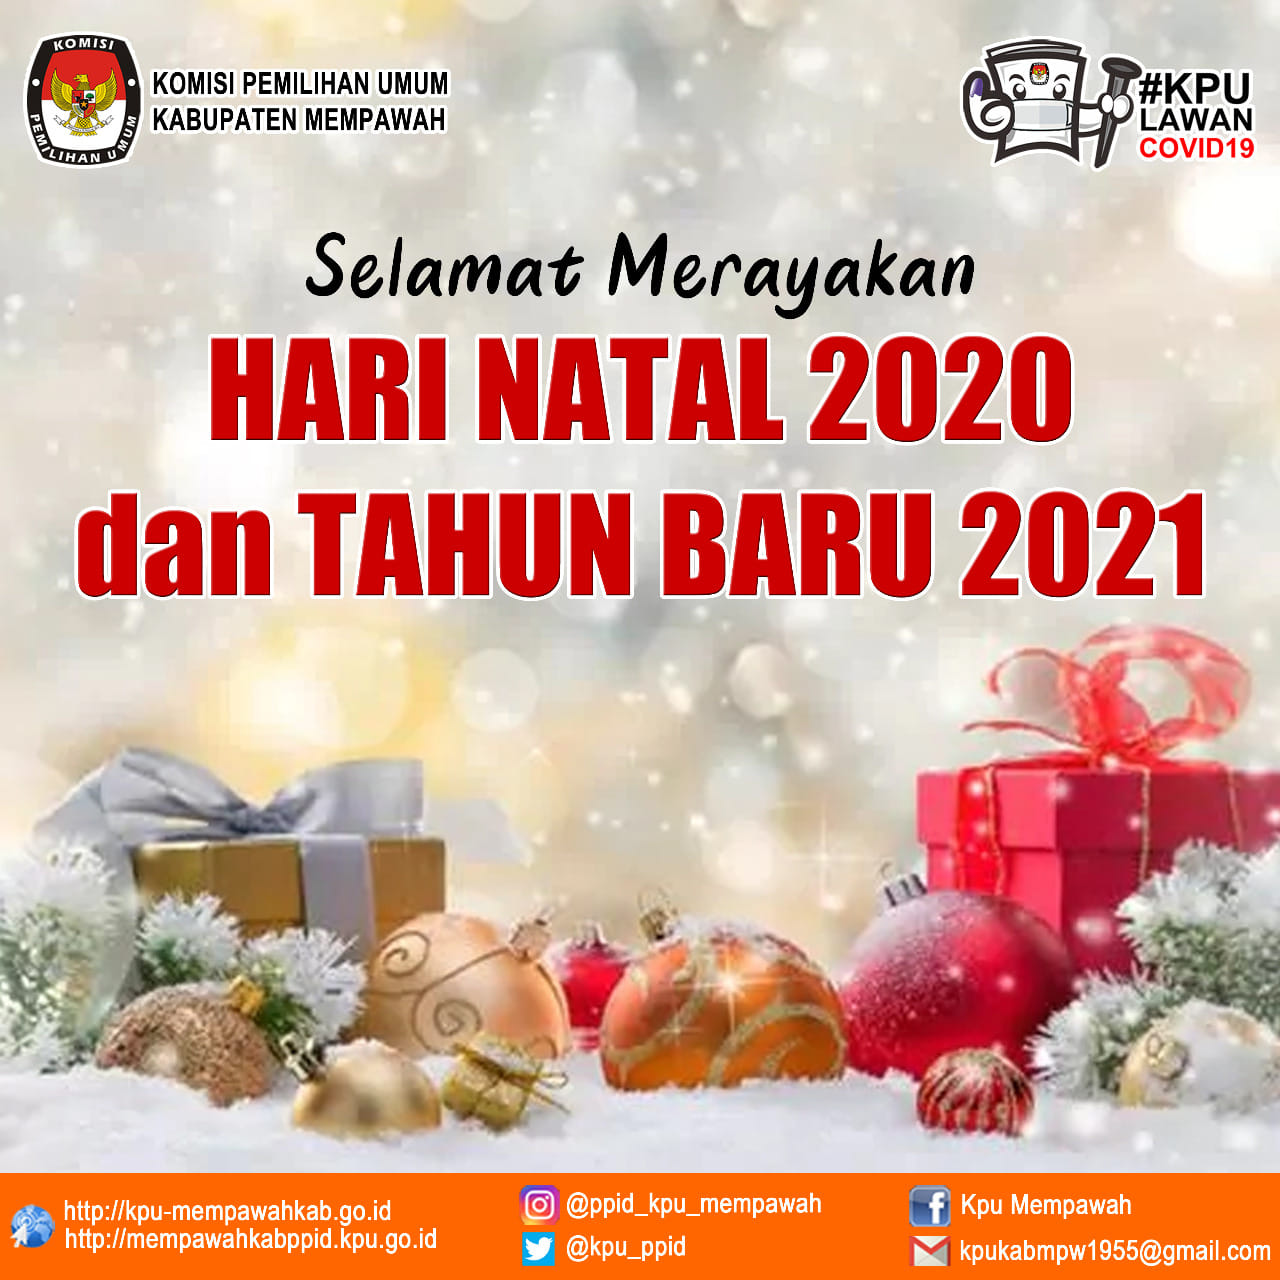 HARI NATAL 2020 DAN TAHUN BARU 2021